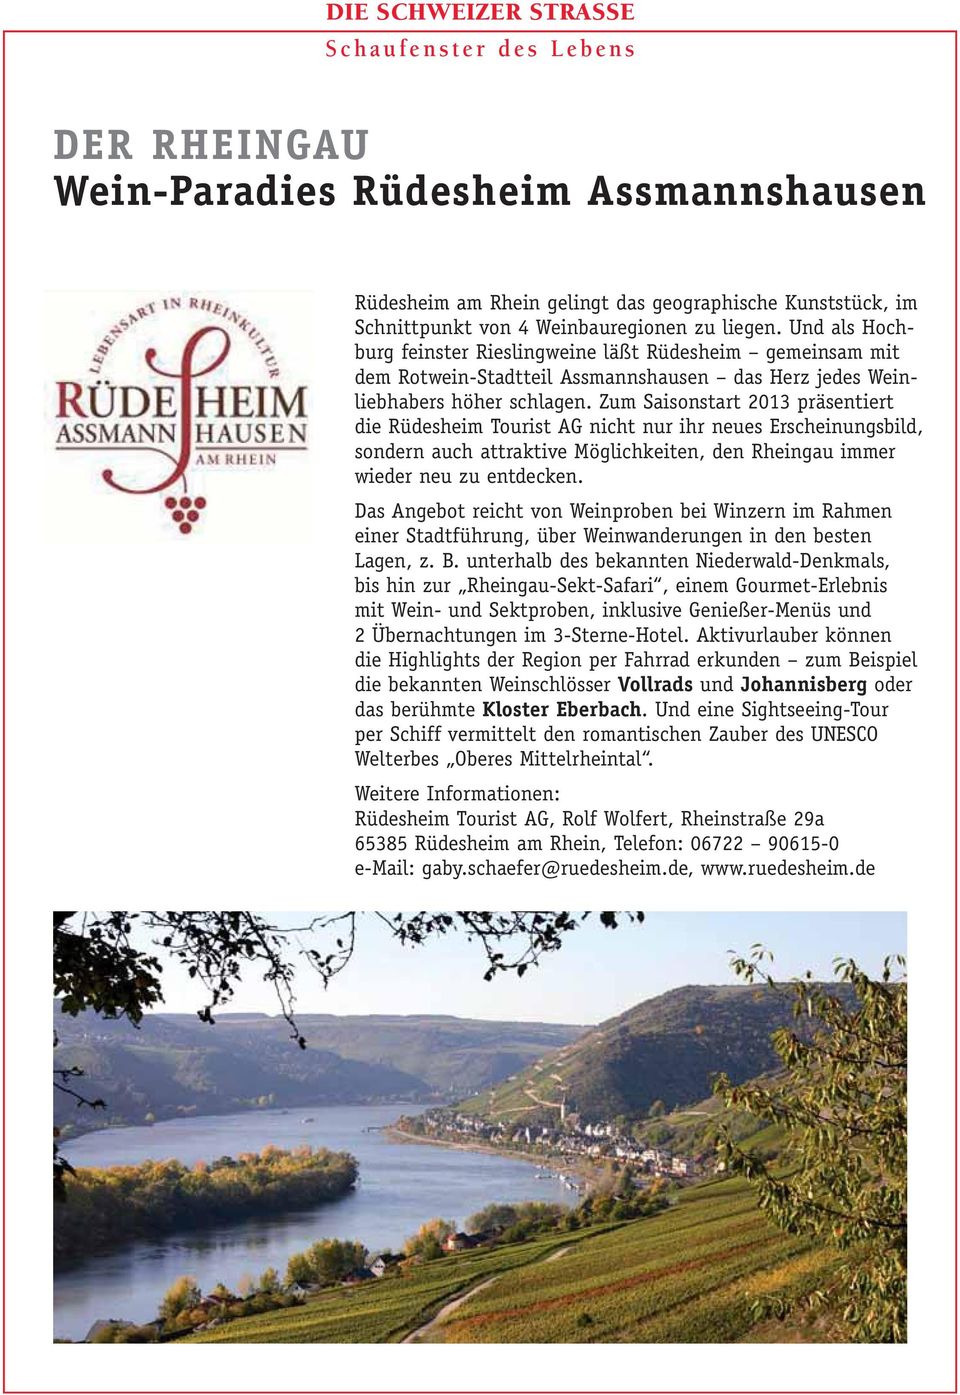 Zum Saisonstart 2013 präsentiert die Rüdesheim Tourist AG nicht nur ihr neues Erscheinungsbild, sondern auch attraktive Möglichkeiten, den Rheingau immer wieder neu zu entdecken.